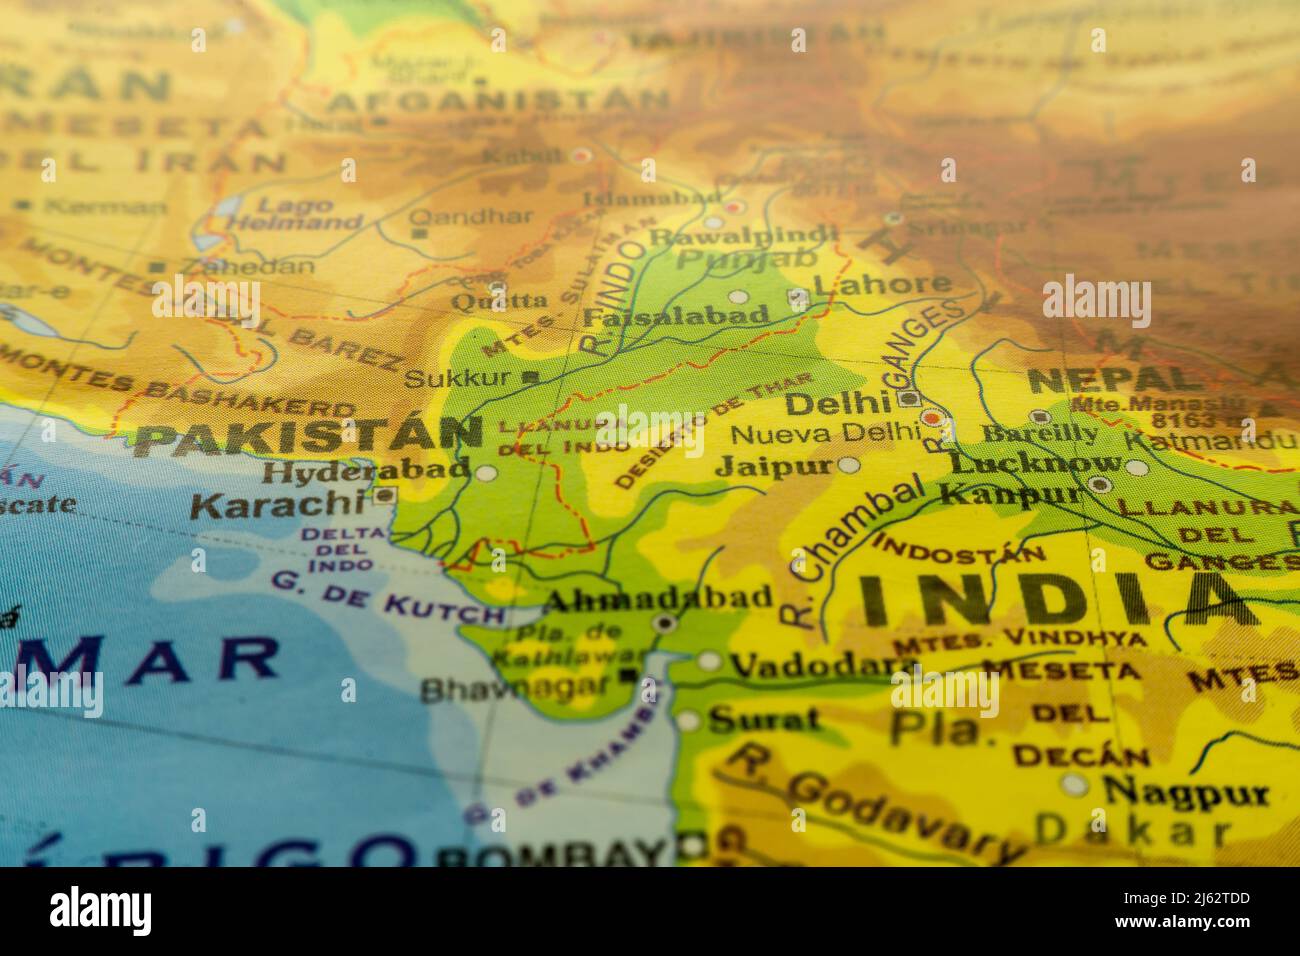 Carte graphique en gros plan du Pakistan et de l'Inde du Nord-Ouest, avec références en espagnol. Concept de cartographie, Voyage, tourisme, géographie. Foc différentiel Banque D'Images